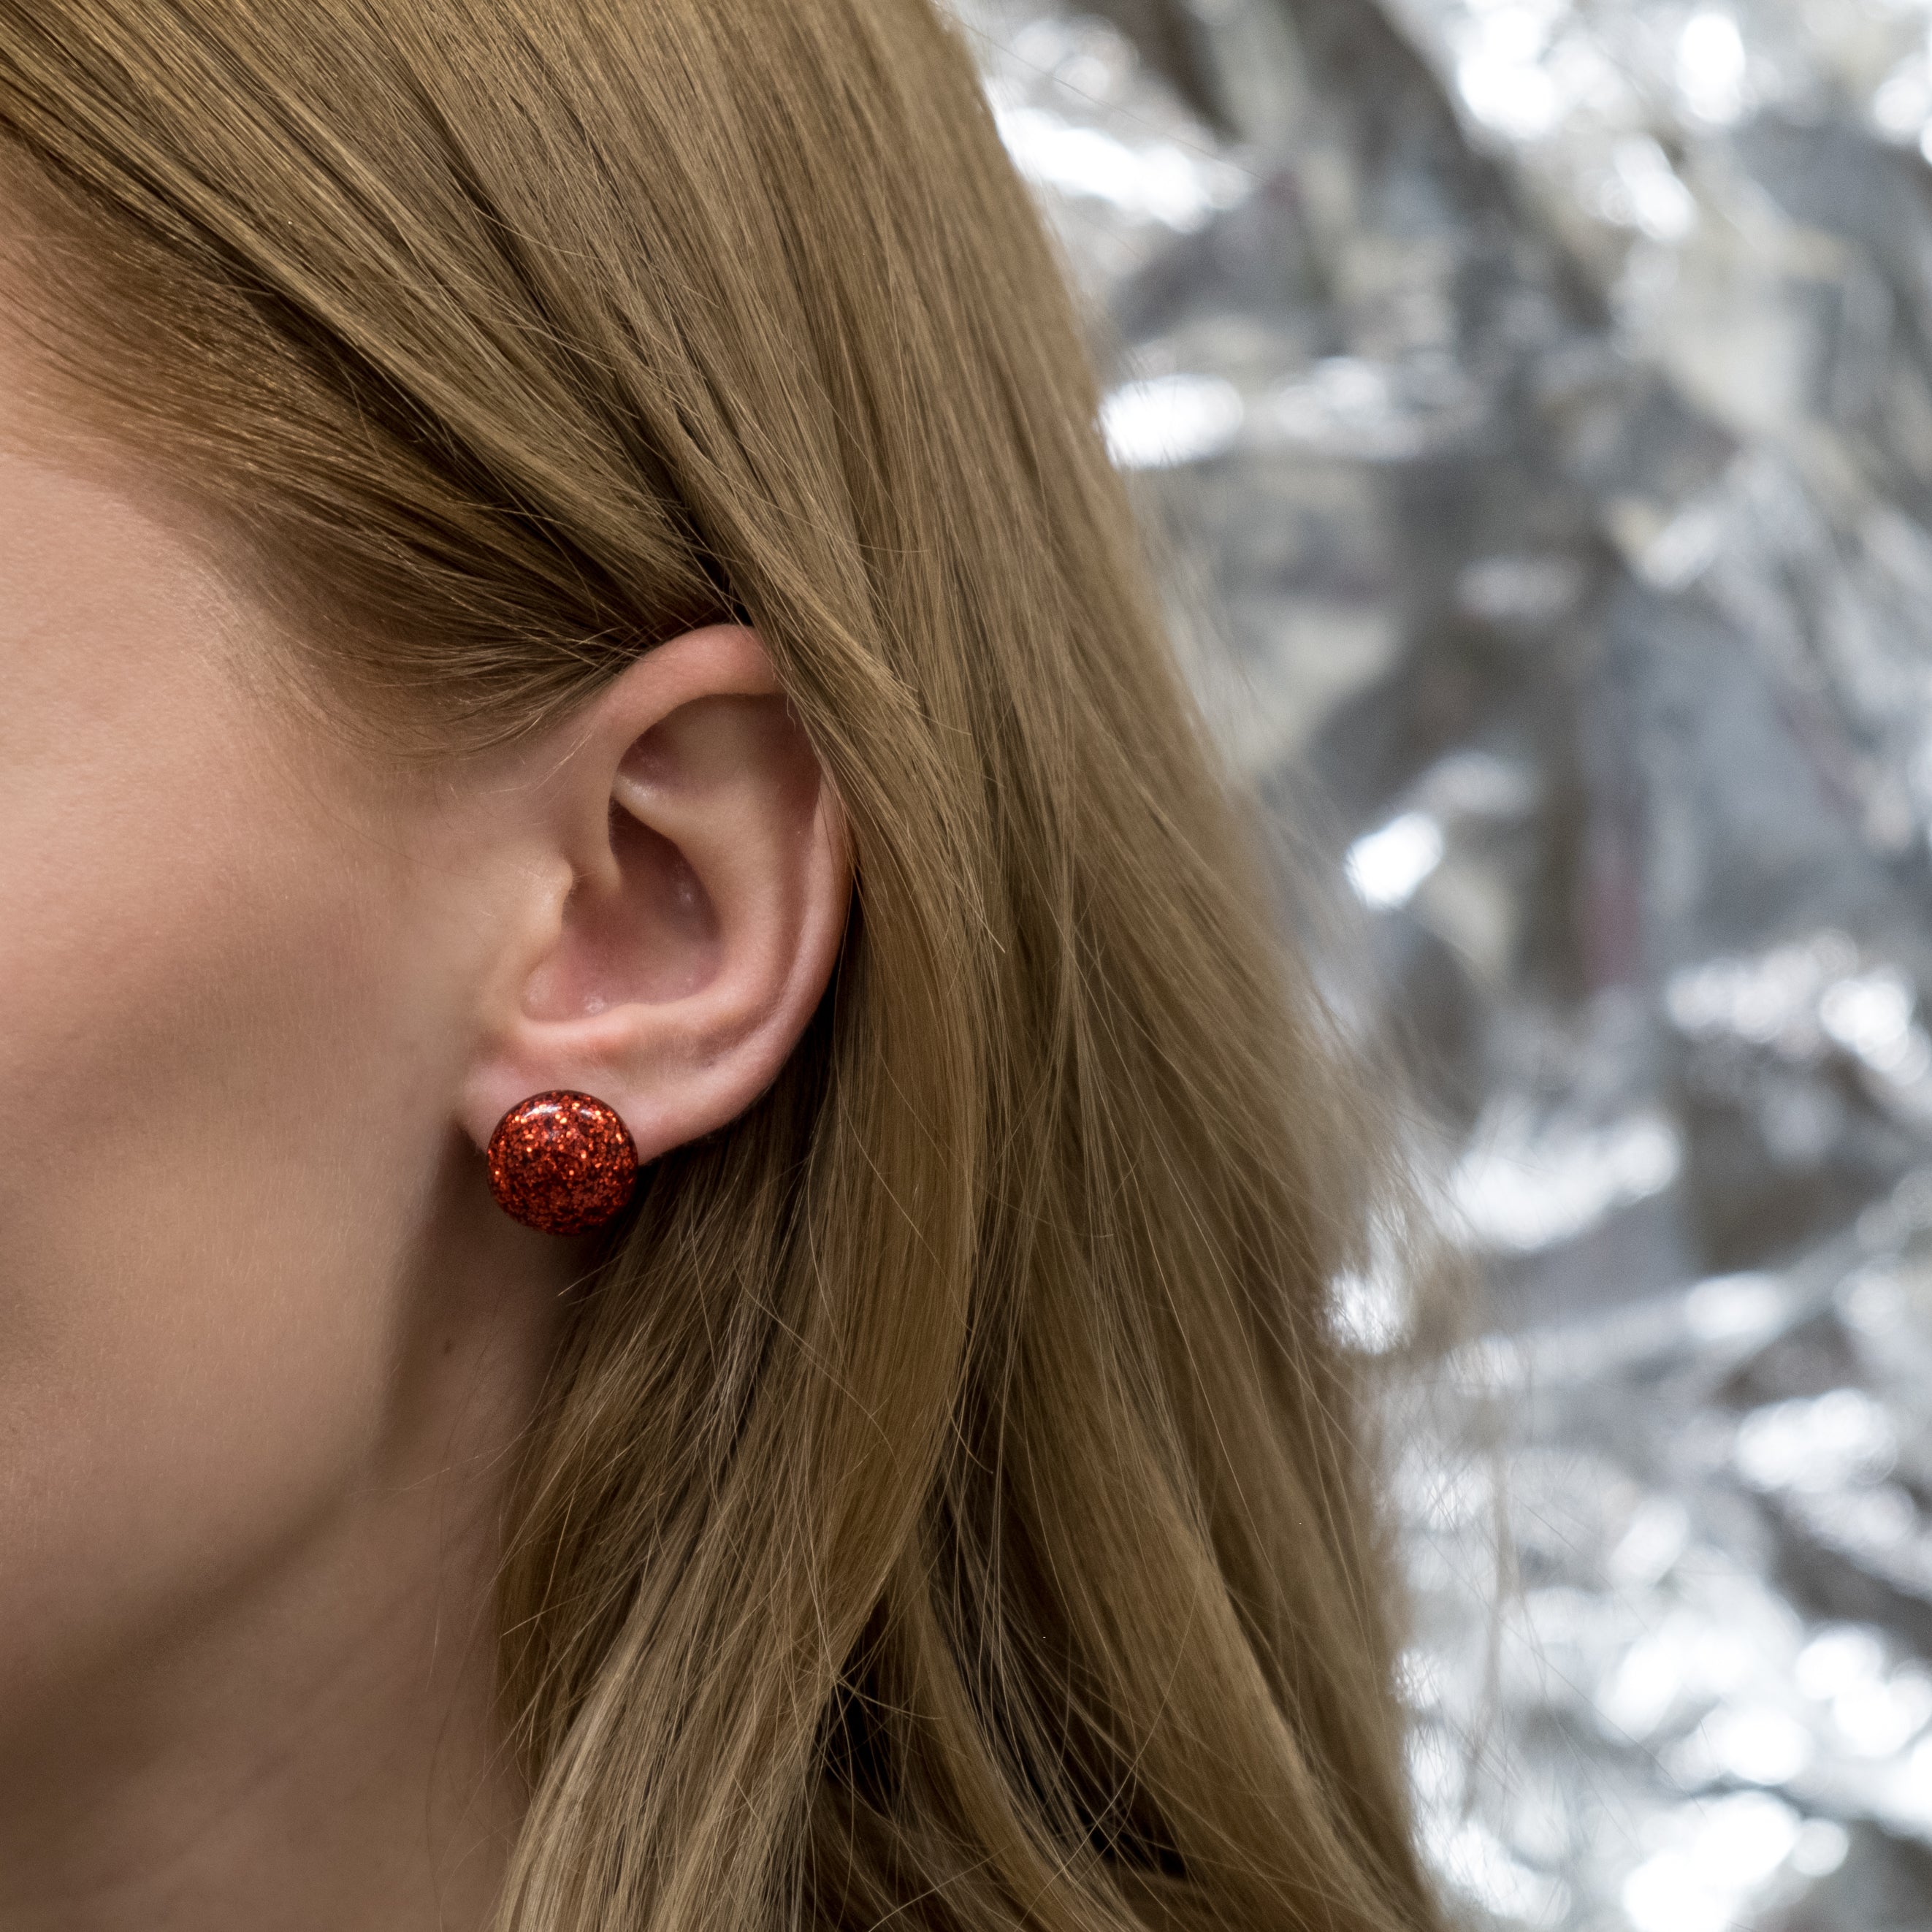 "Blood" earrings